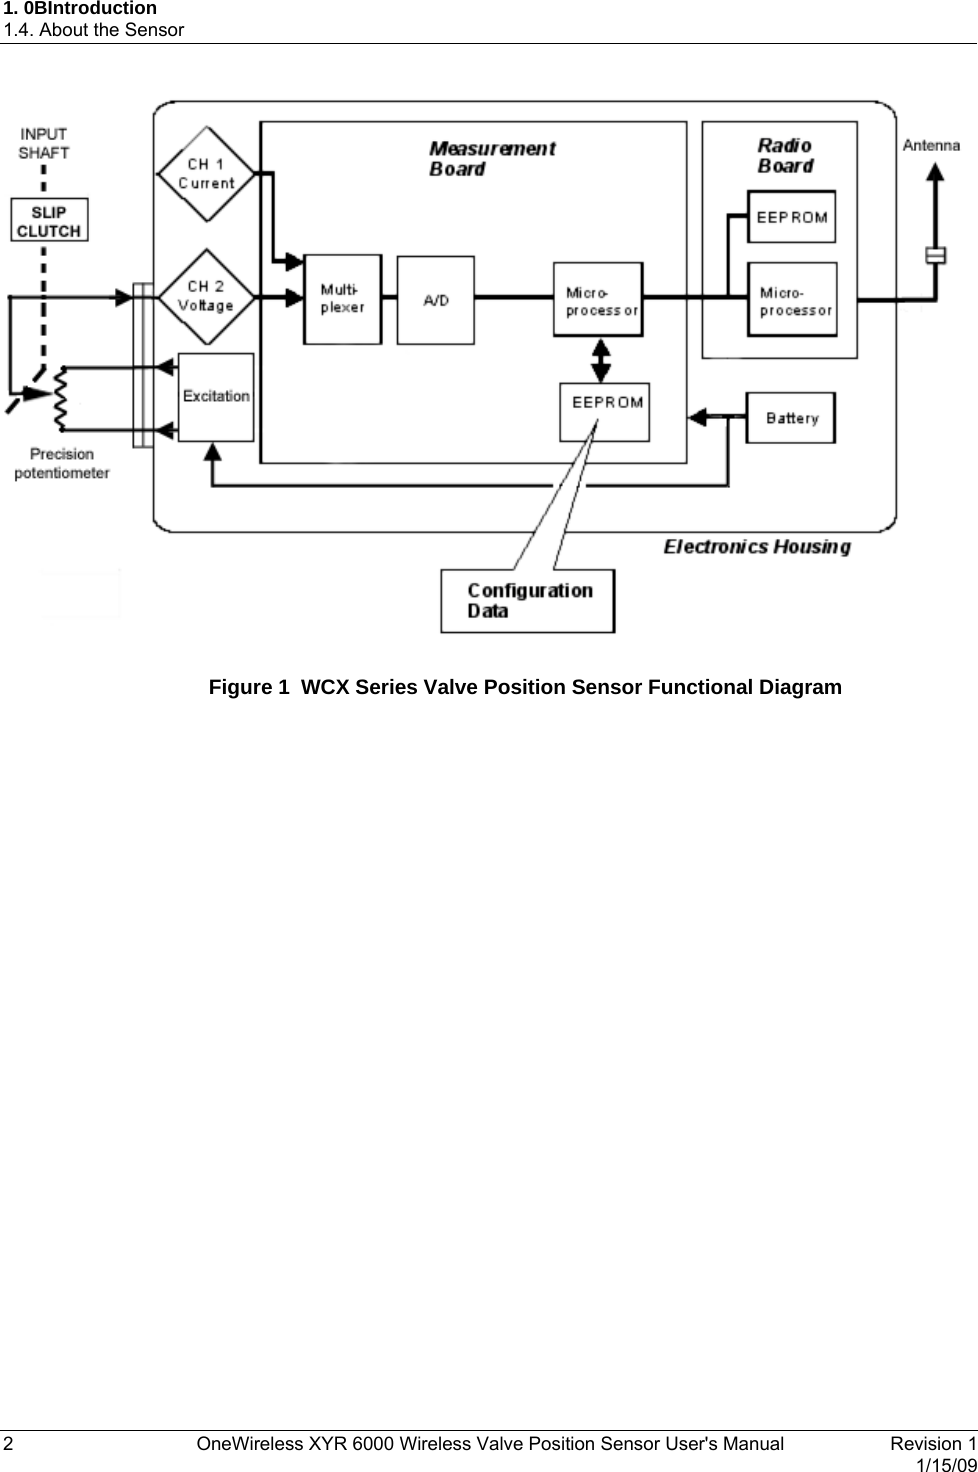 1. 0BIntroduction 1.4. About the Sensor   Figure 1  WCX Series Valve Position Sensor Functional Diagram  2  OneWireless XYR 6000 Wireless Valve Position Sensor User&apos;s Manual   Revision 1   1/15/09 